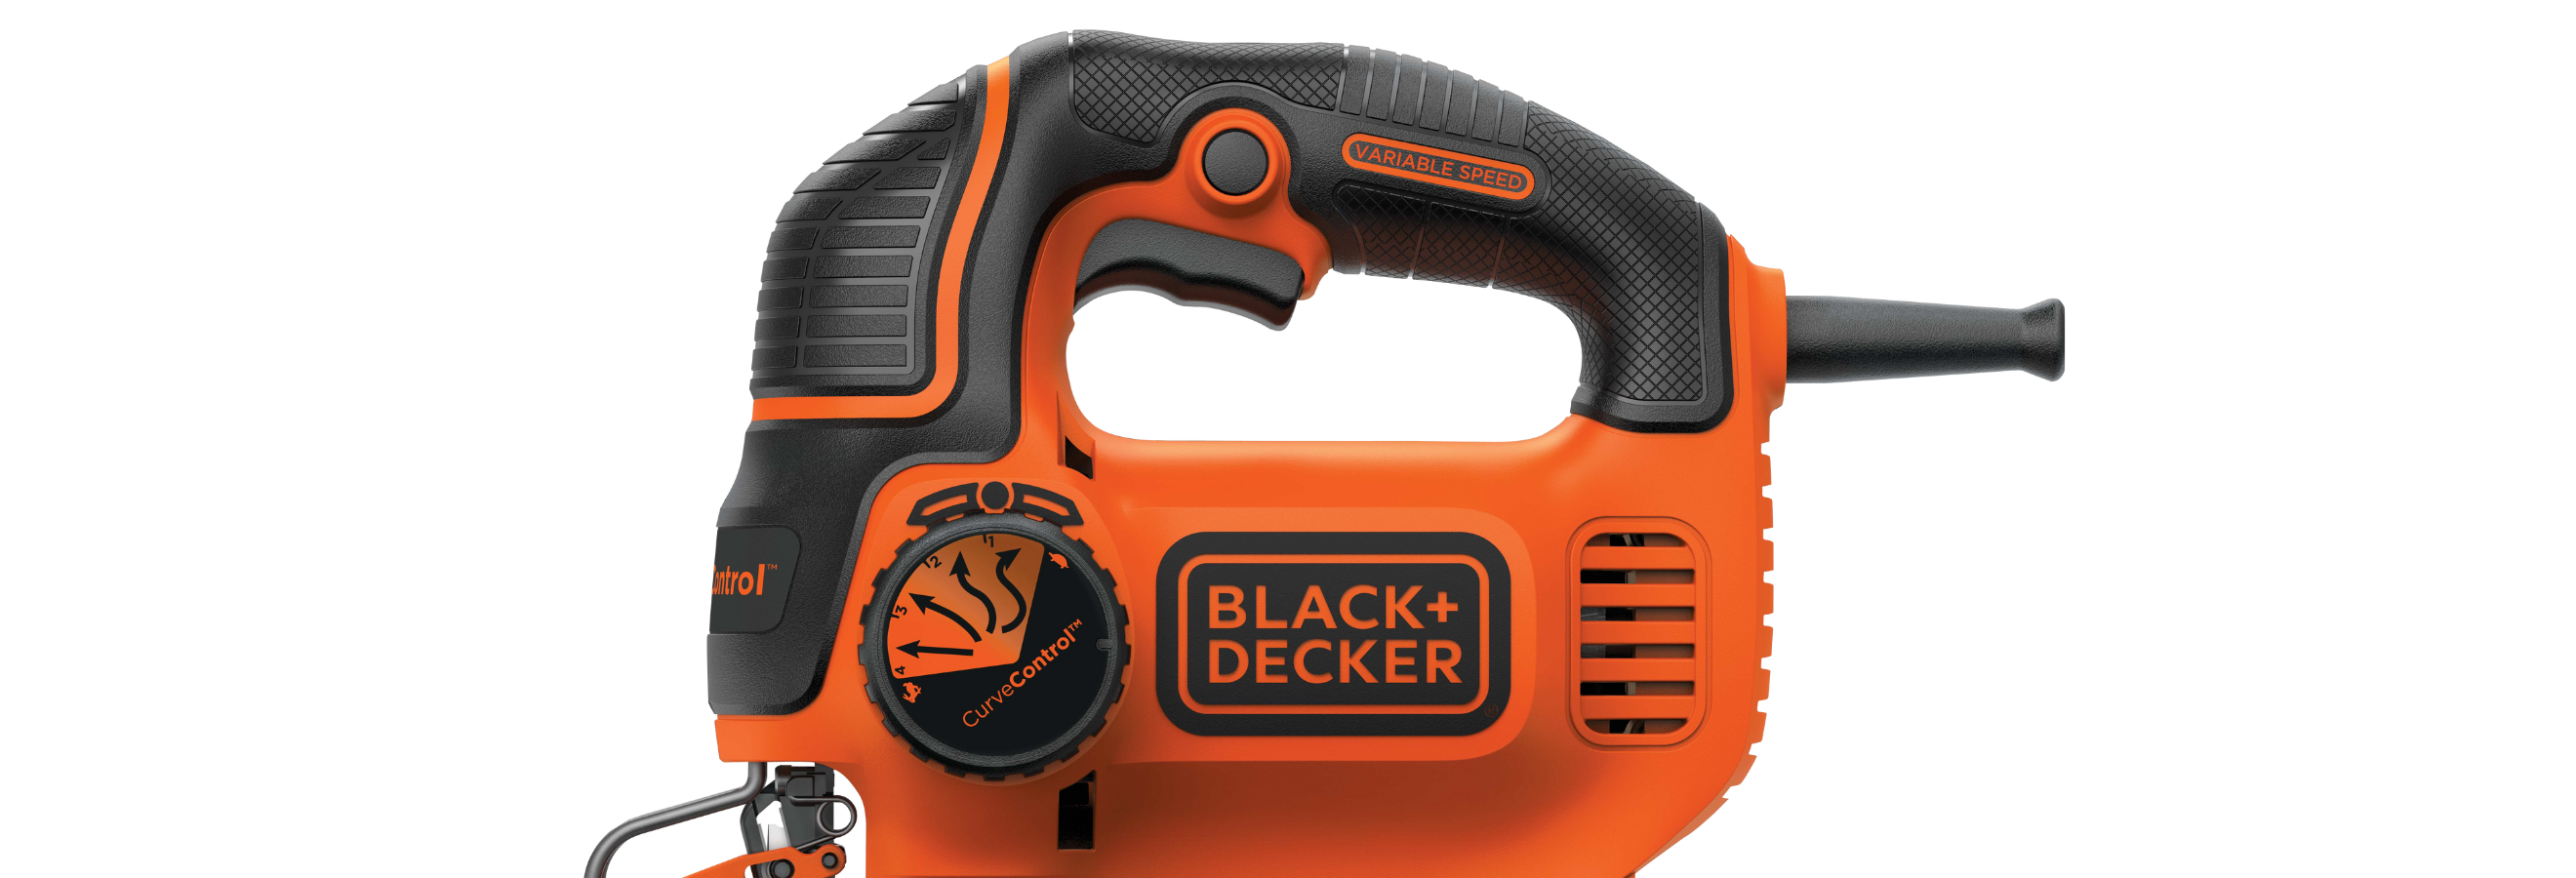 Black+Decker CJ625 100048010